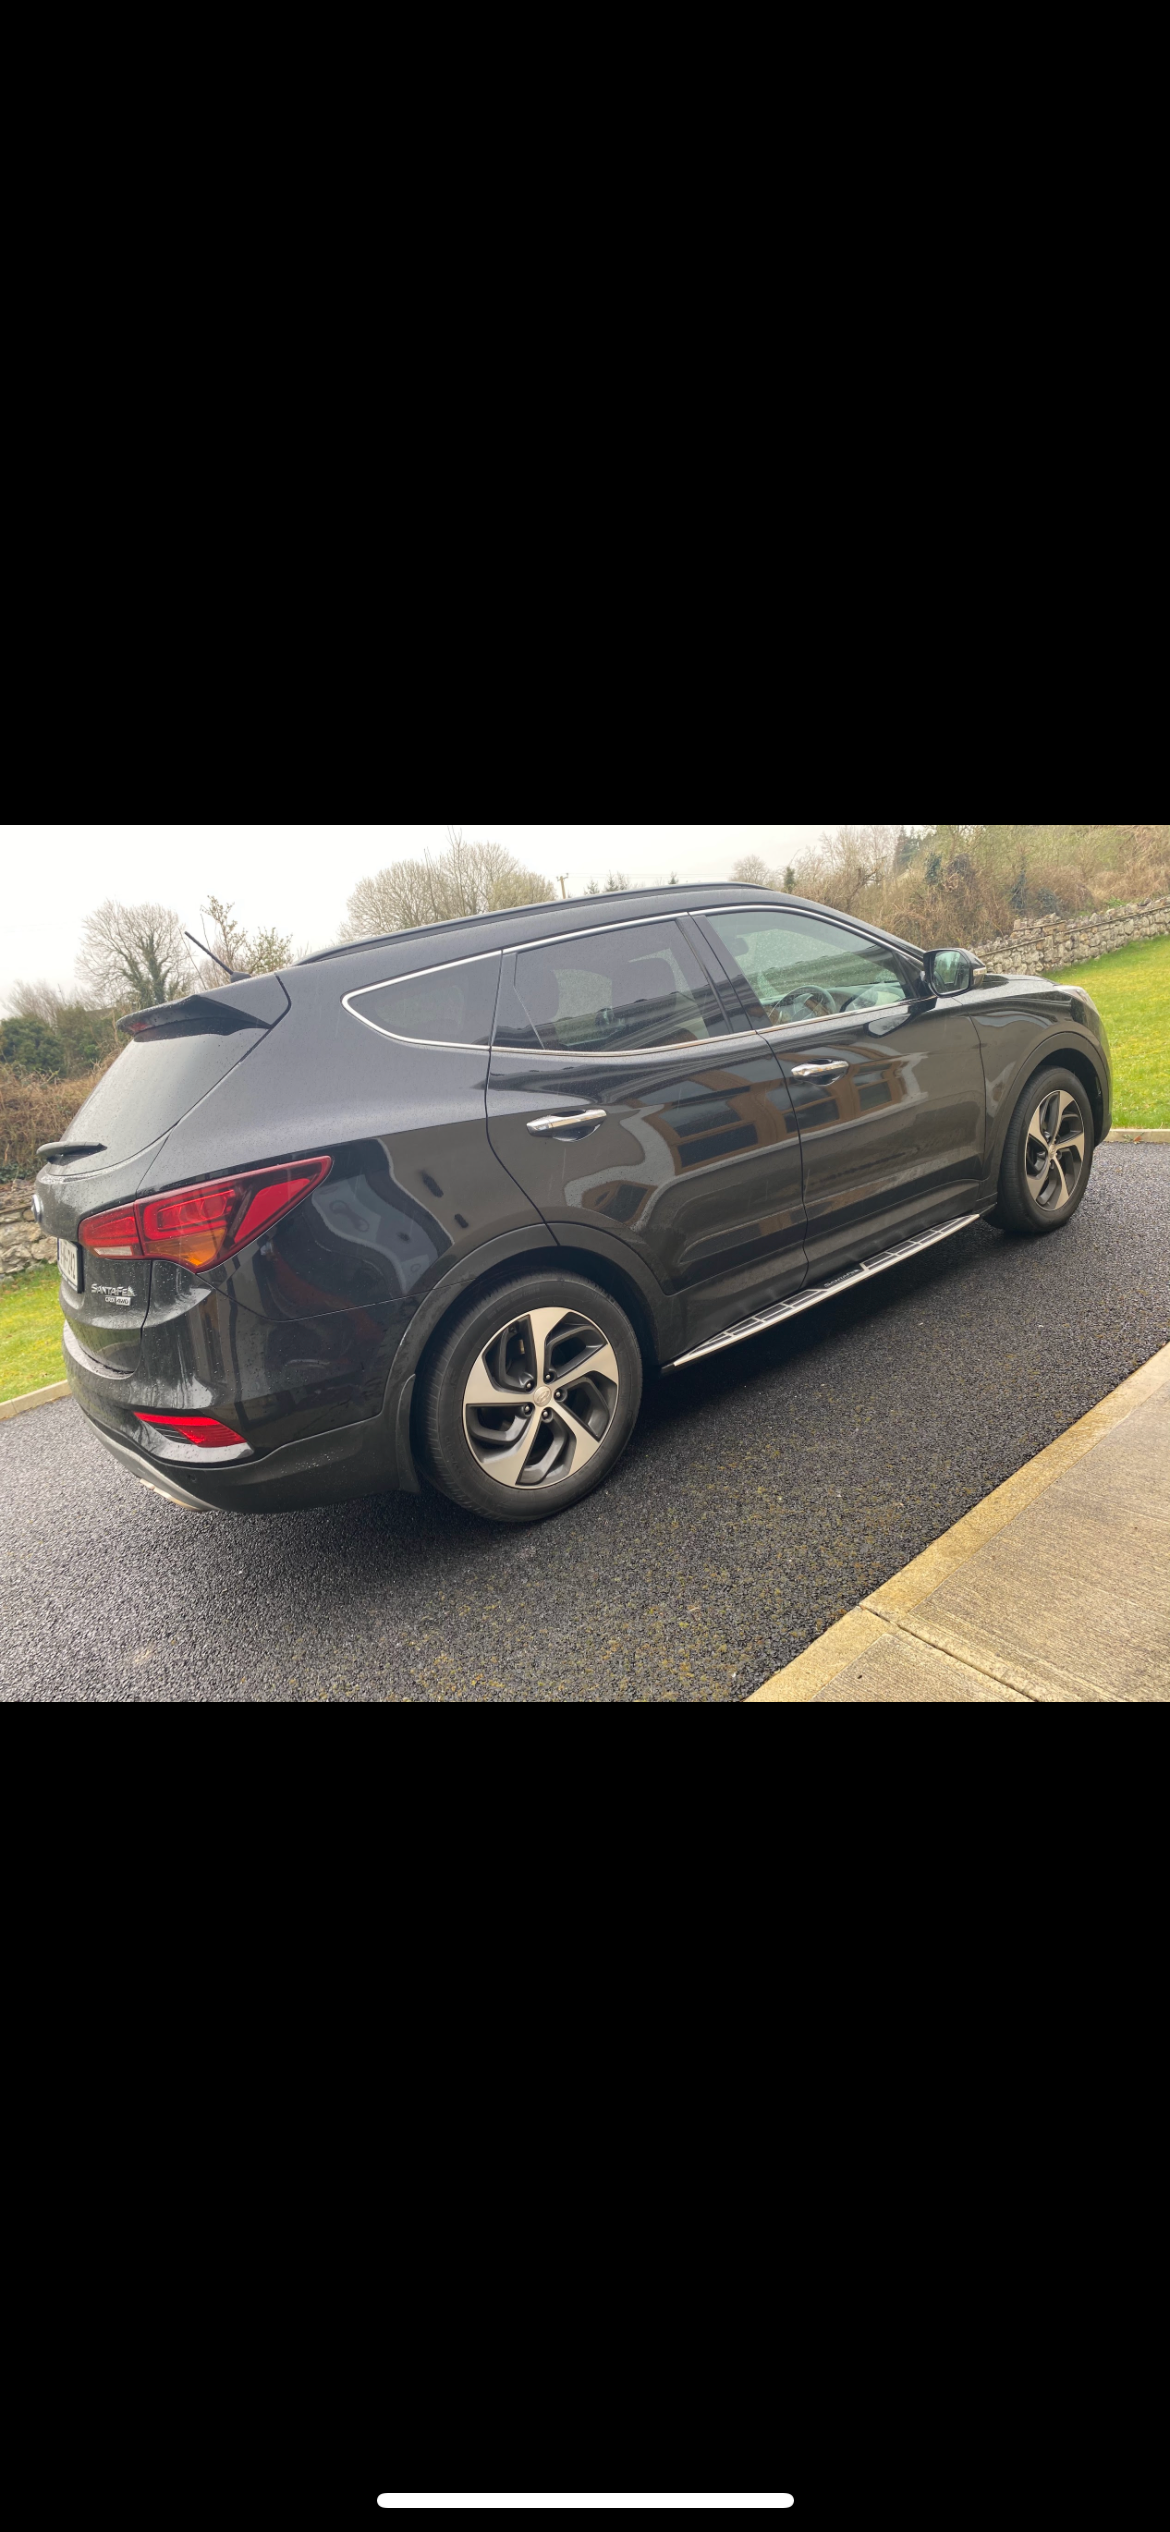 Used Hyundai Santa Fe 2018 in Roscommon